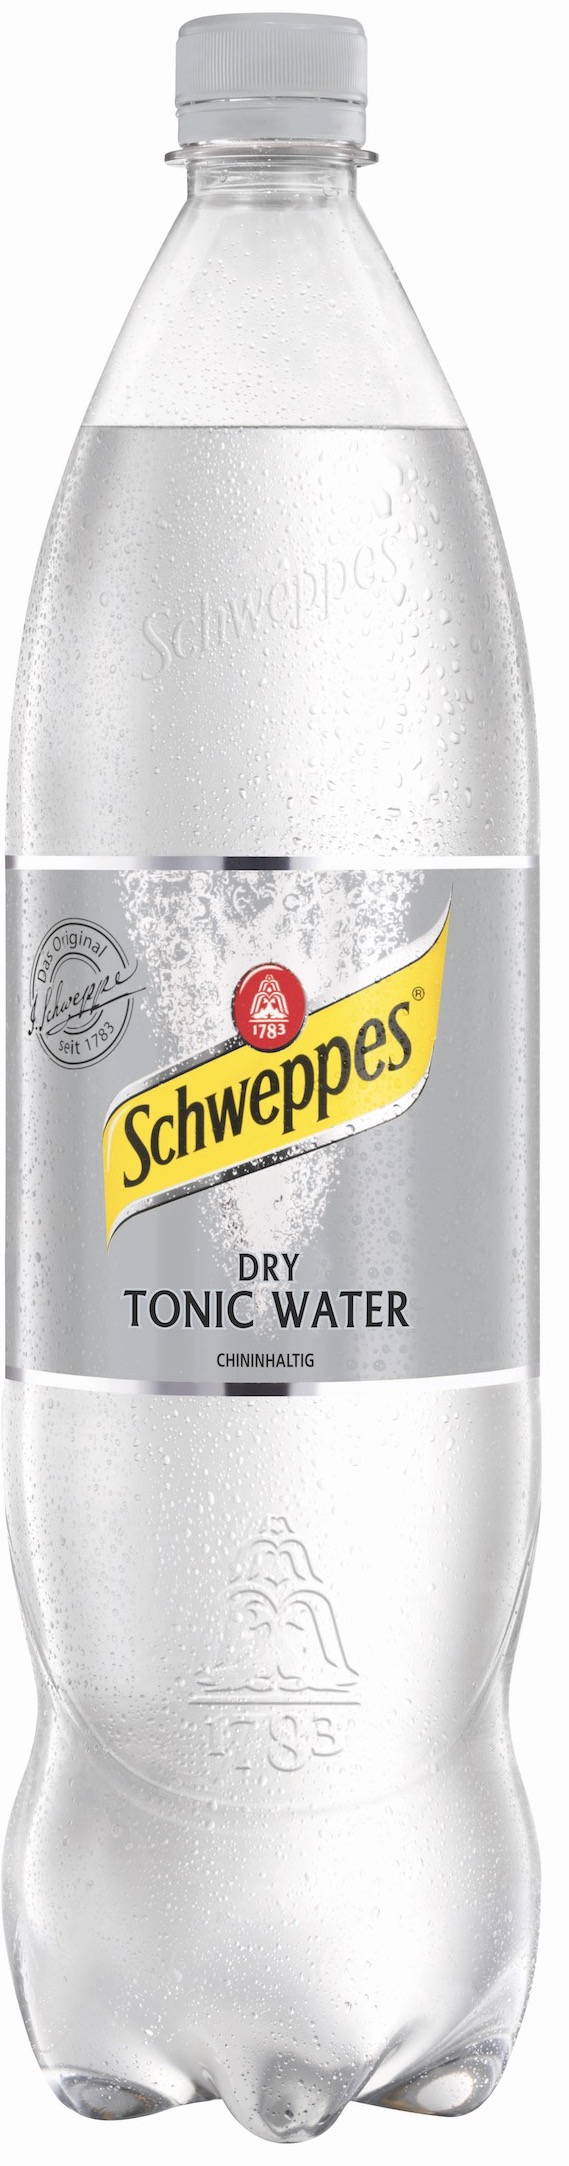 Schweppes Dry Tonic Water 1,25L EINWEG